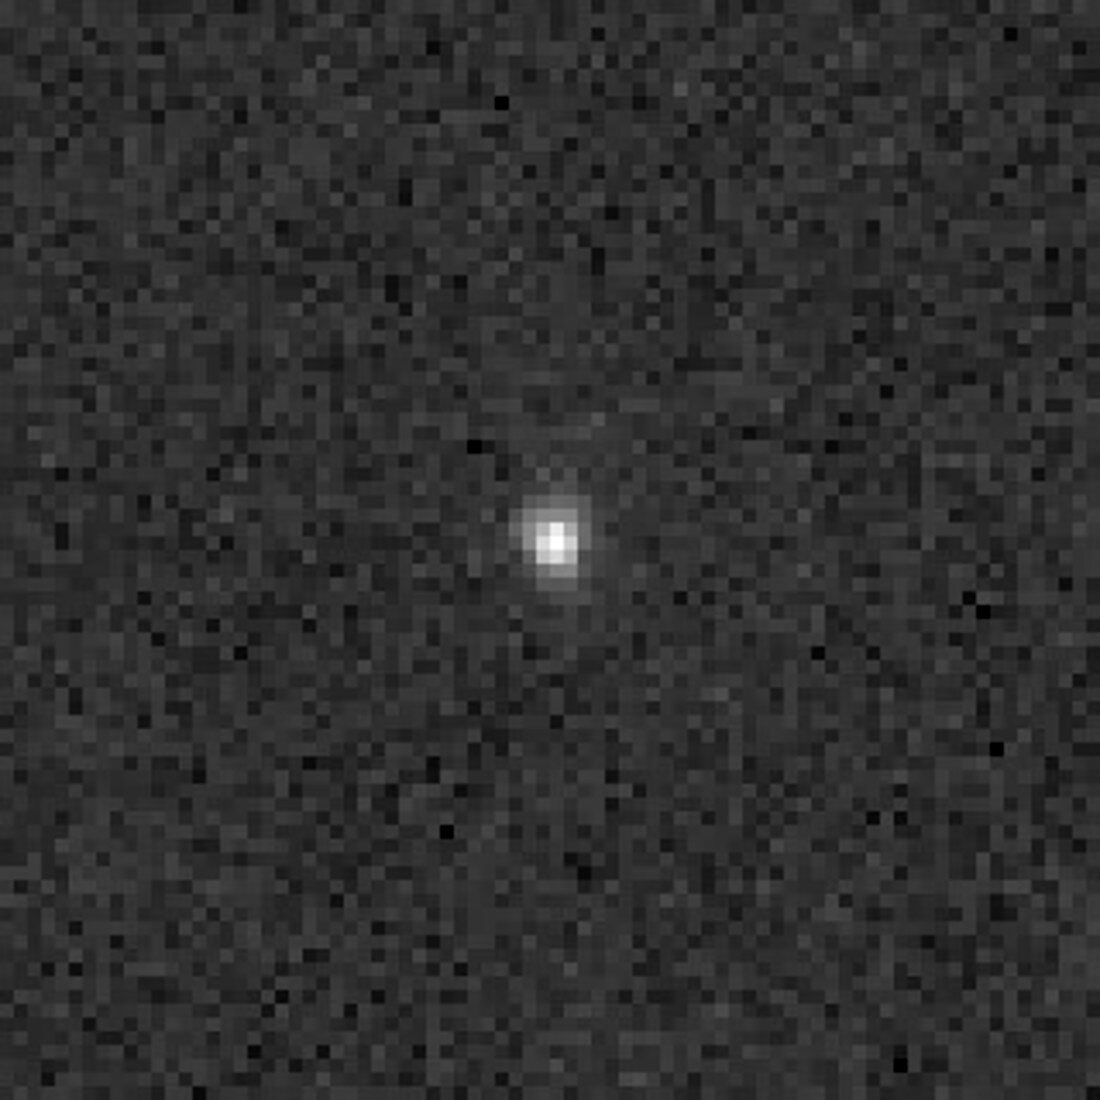 Sedna,Kuiper Belt Object